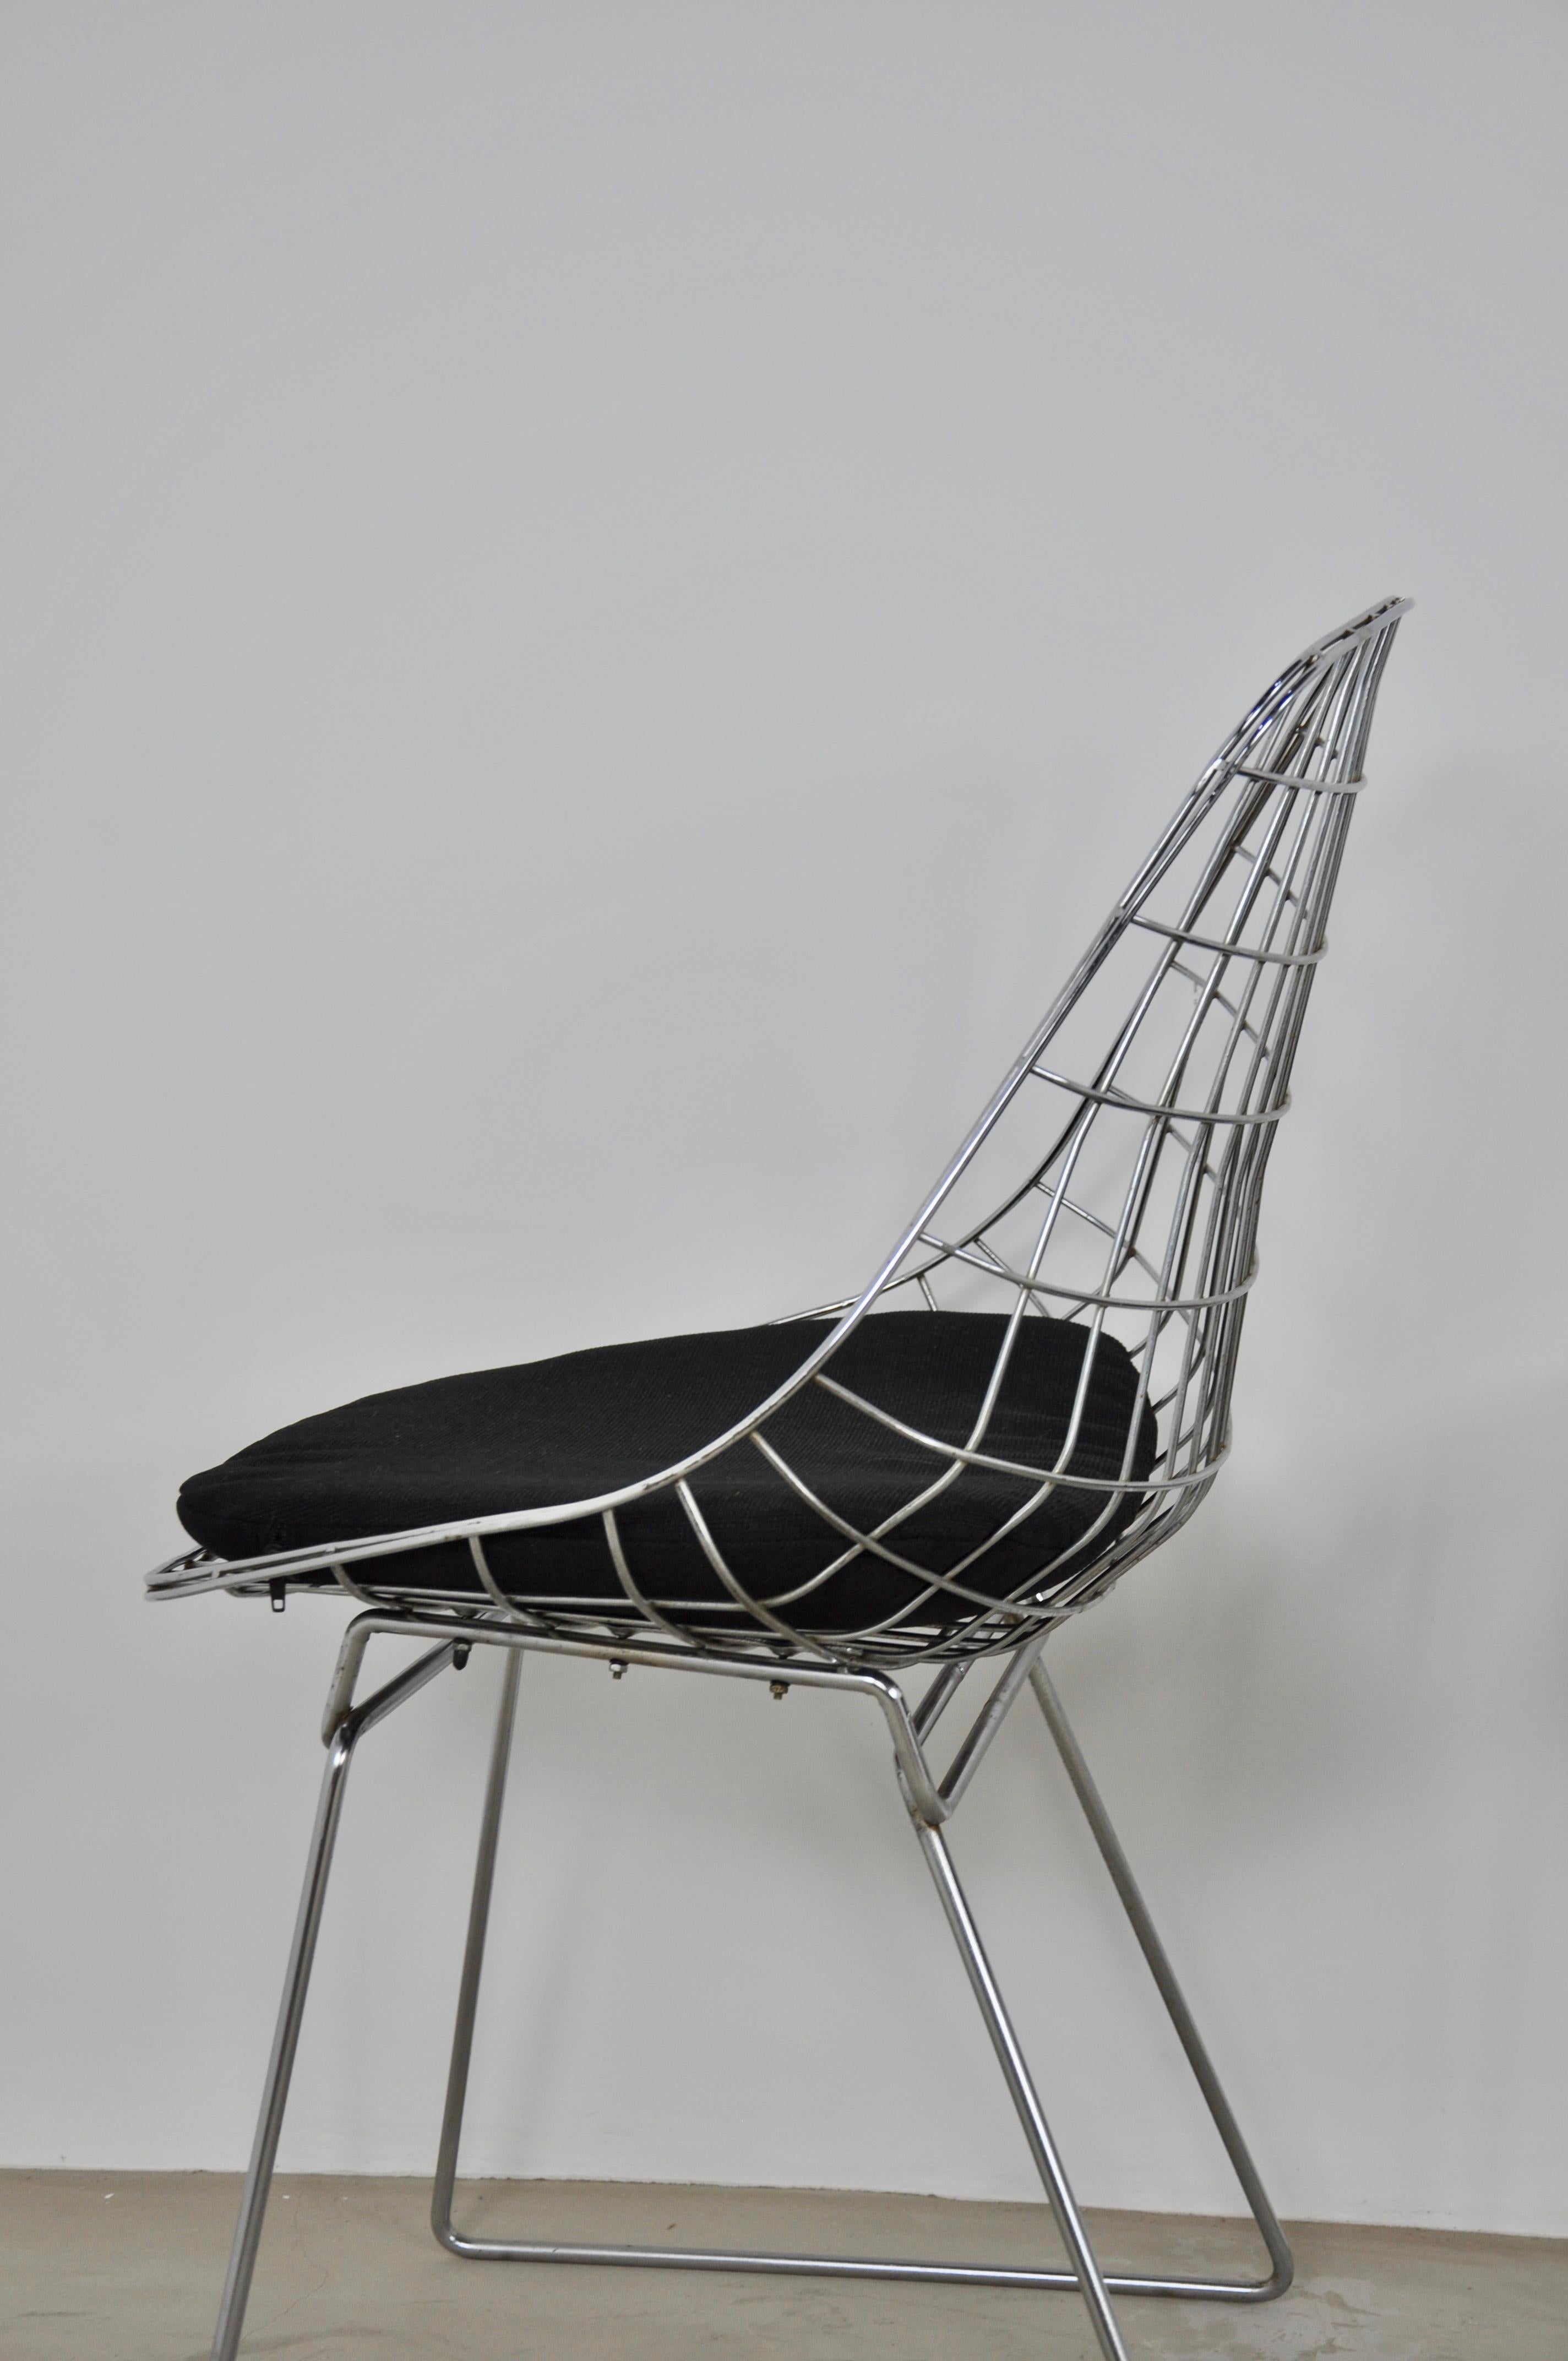 Metal Chairs Wire SM05 by Cees Braakman & Adriaan Dekker for Pastoe, 1958